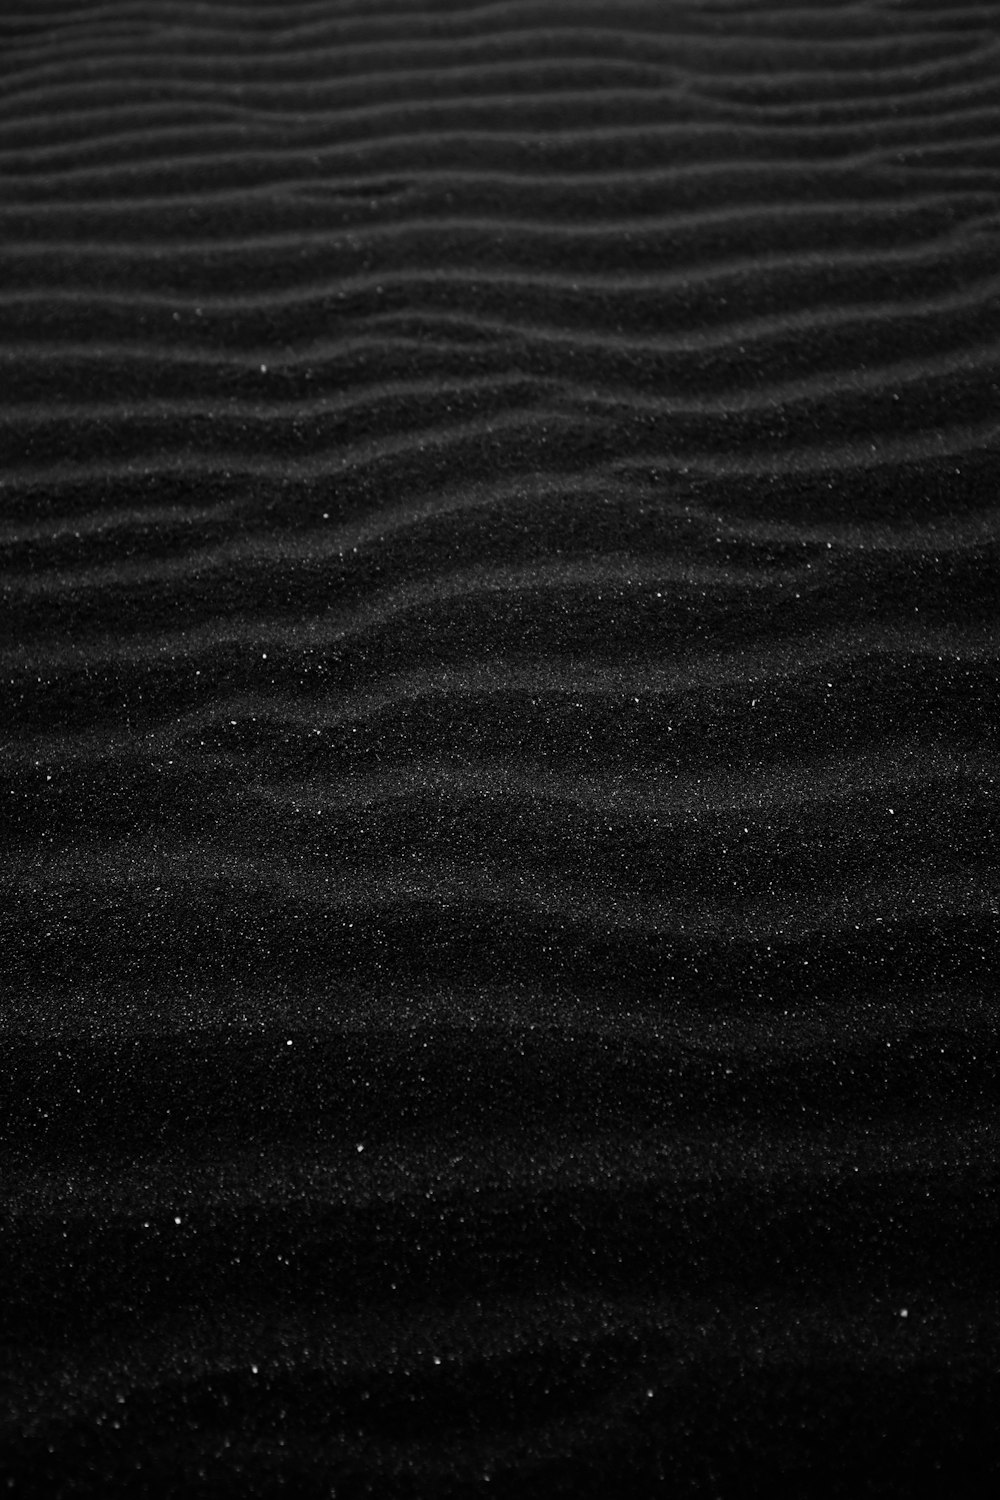 Hình ảnh cát đen miễn phí: Hình ảnh cát đen miễn phí là lựa chọn hoàn hảo cho những ai yêu thích sự đơn giản và tối giản. Những hình ảnh này sẽ đưa bạn đến một không gian yên tĩnh và bình dị giữa bối cảnh phức tạp của cuộc sống hiện đại. Hãy tải ngay và cảm nhận sự tĩnh lặng từ những hình ảnh cát đen miễn phí này.